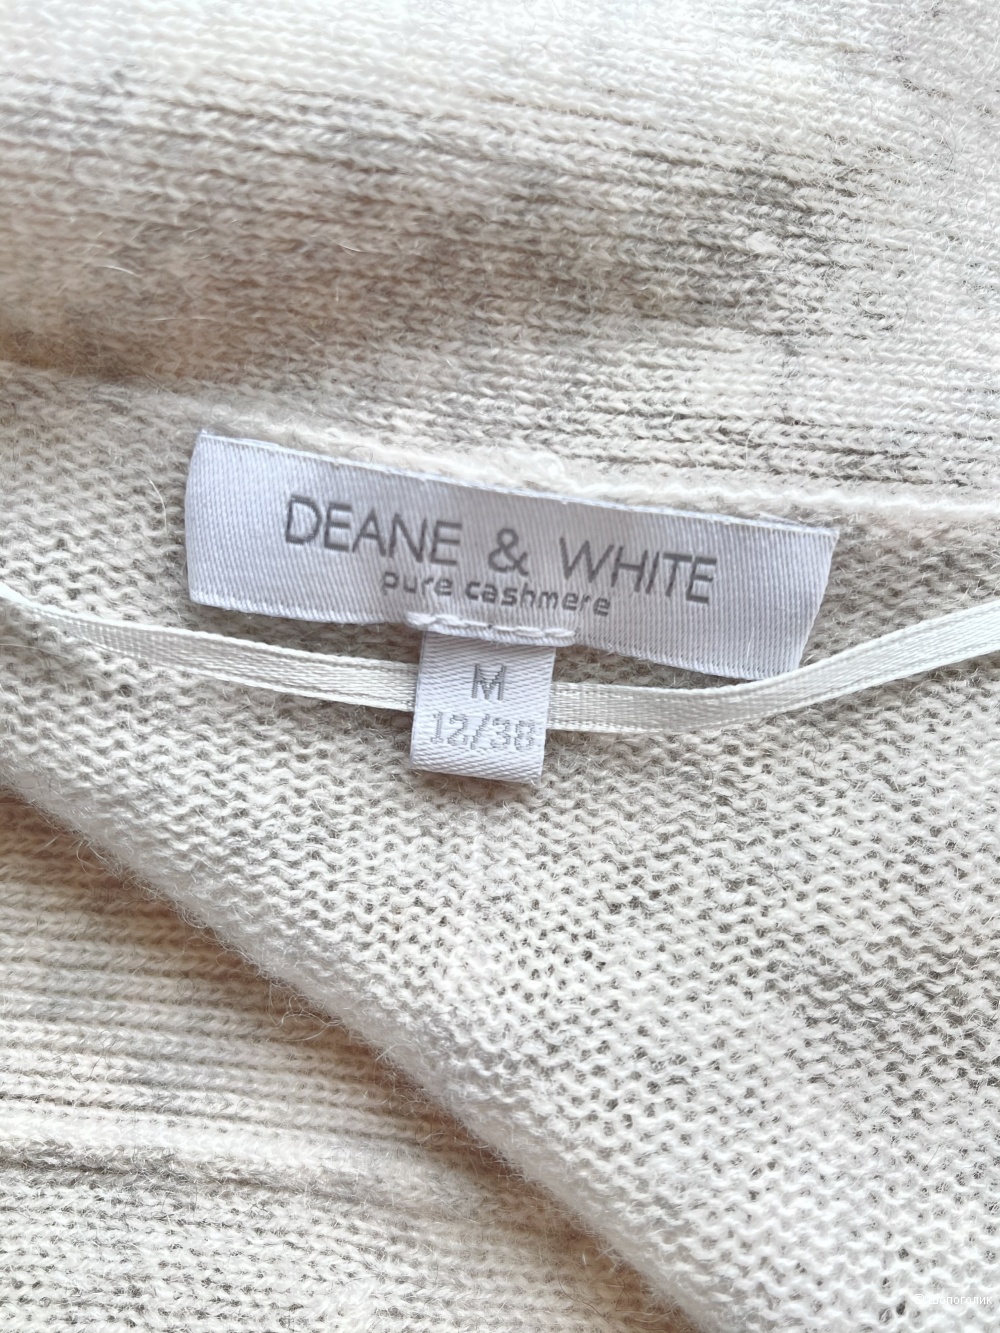 Кардиган Deane & White Размер M.